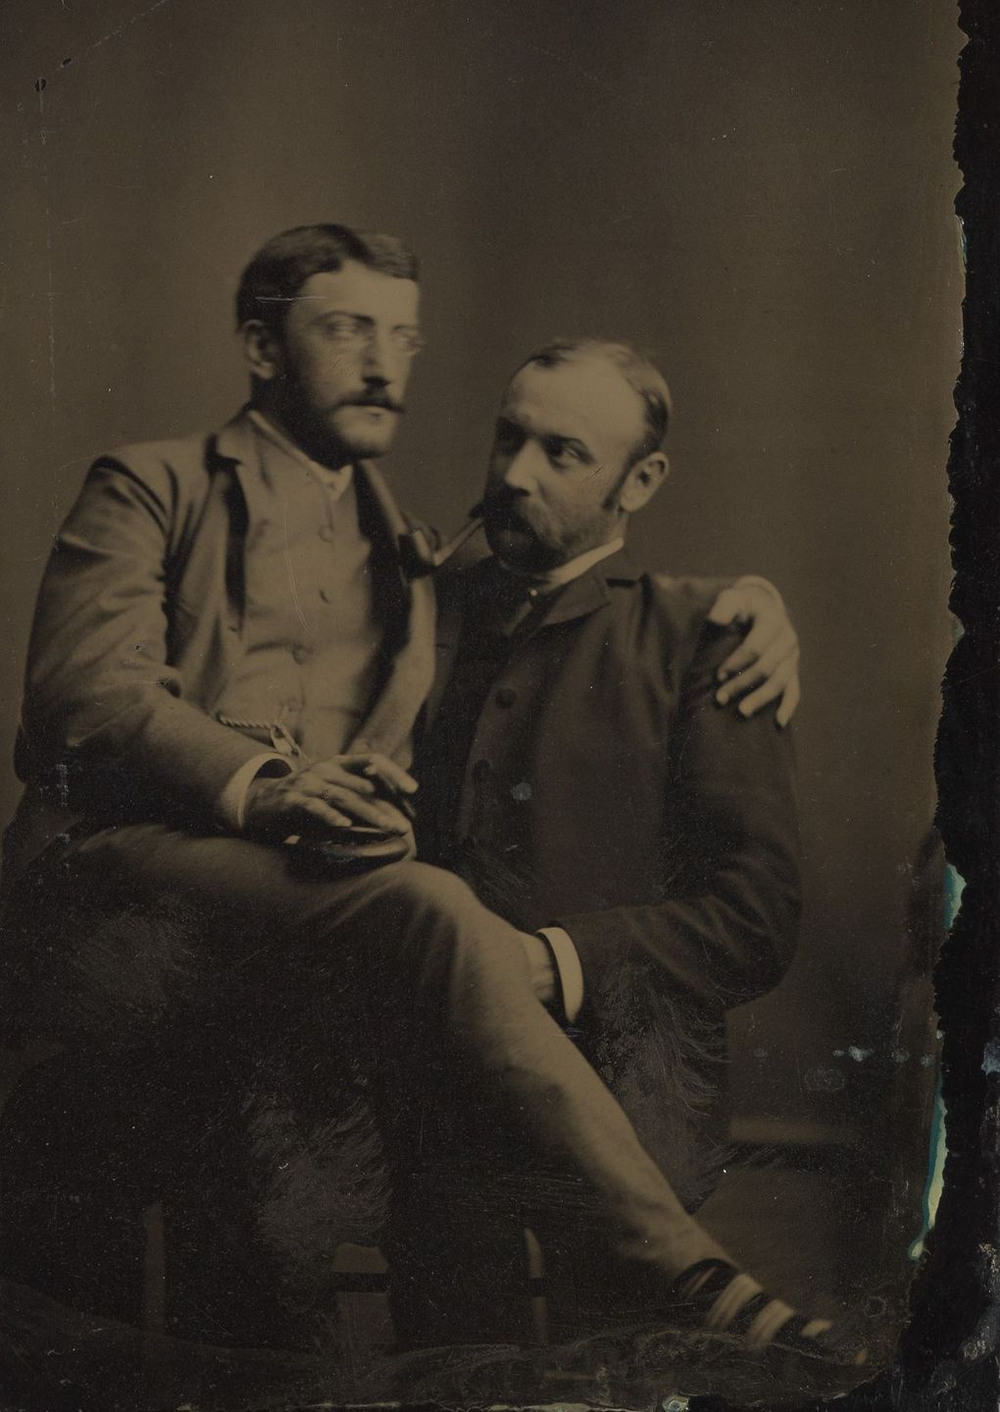 Броманс в викторианскую эпоху: интимные мужские объятия в редких фотографиях конца 1800-х годов  2